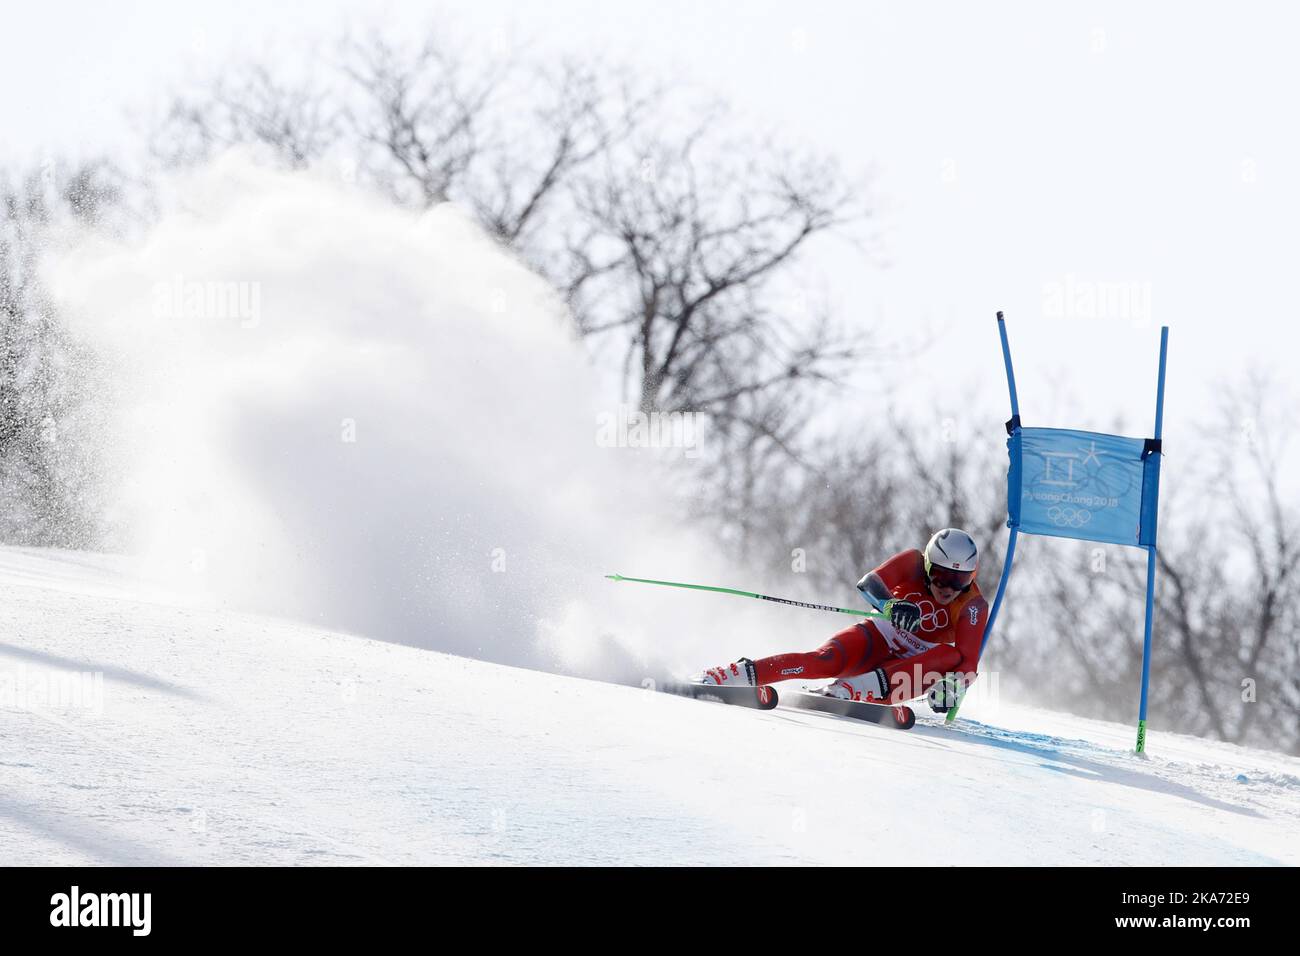 PyeongChang, Corée du Sud 20180218. Henrik Kristoffersen, de Norvège, participe au slalom géant masculin des Jeux olympiques d'hiver de 2018 à Pyeongchang, en Corée du Sud. Il remporte la médaille d'argent. Photo: Cornelius Poppe / NTB scanpi Banque D'Images